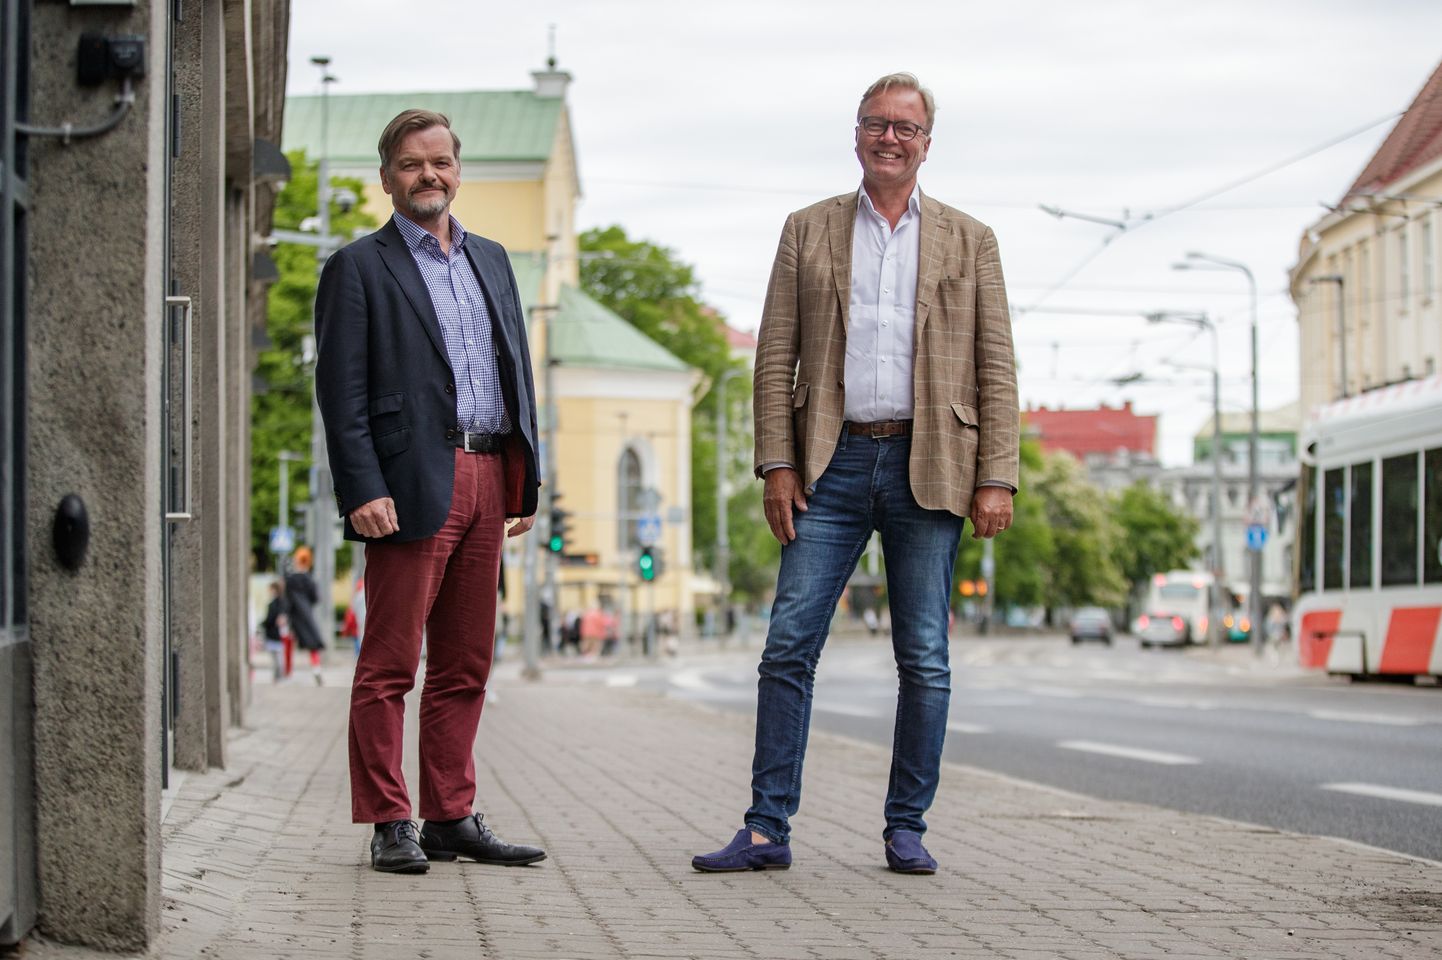 31.05.2021, Tallinn
Äripartnerid Joakim Helenius ja Torfinn Losvik.
Foto Mihkel Maripuu, Postimees